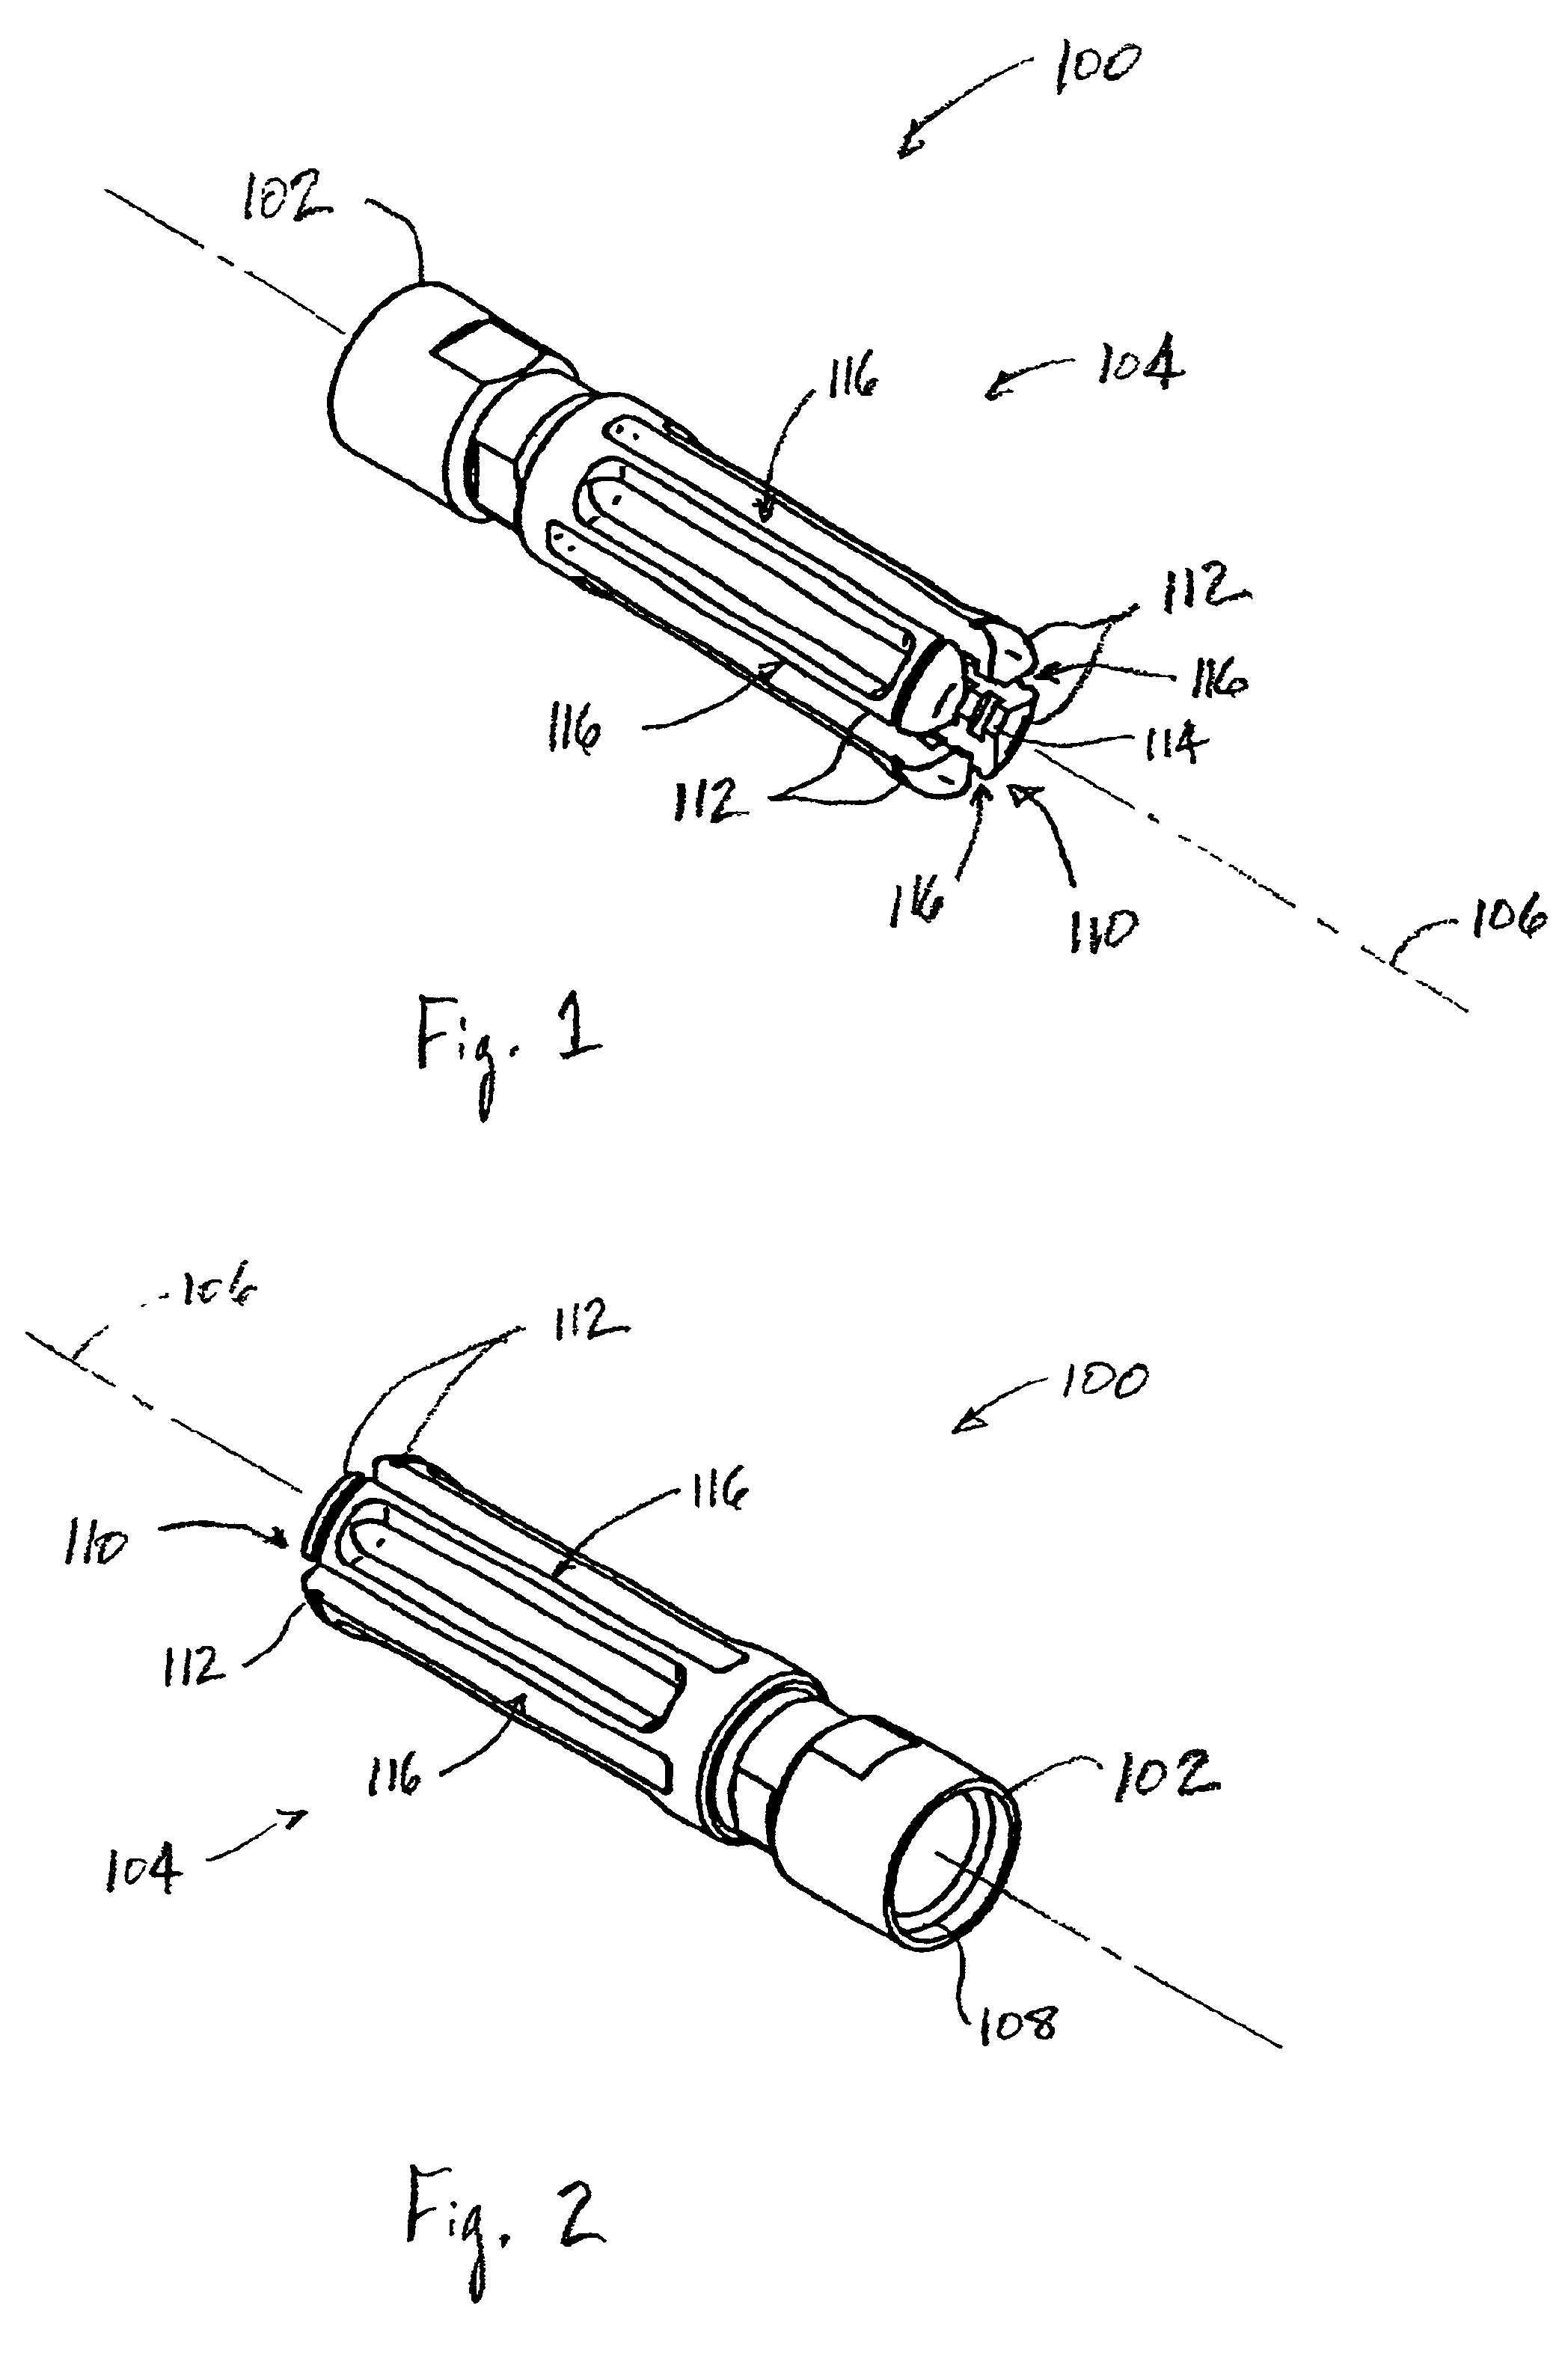 Flash suppressor apparatus and methods